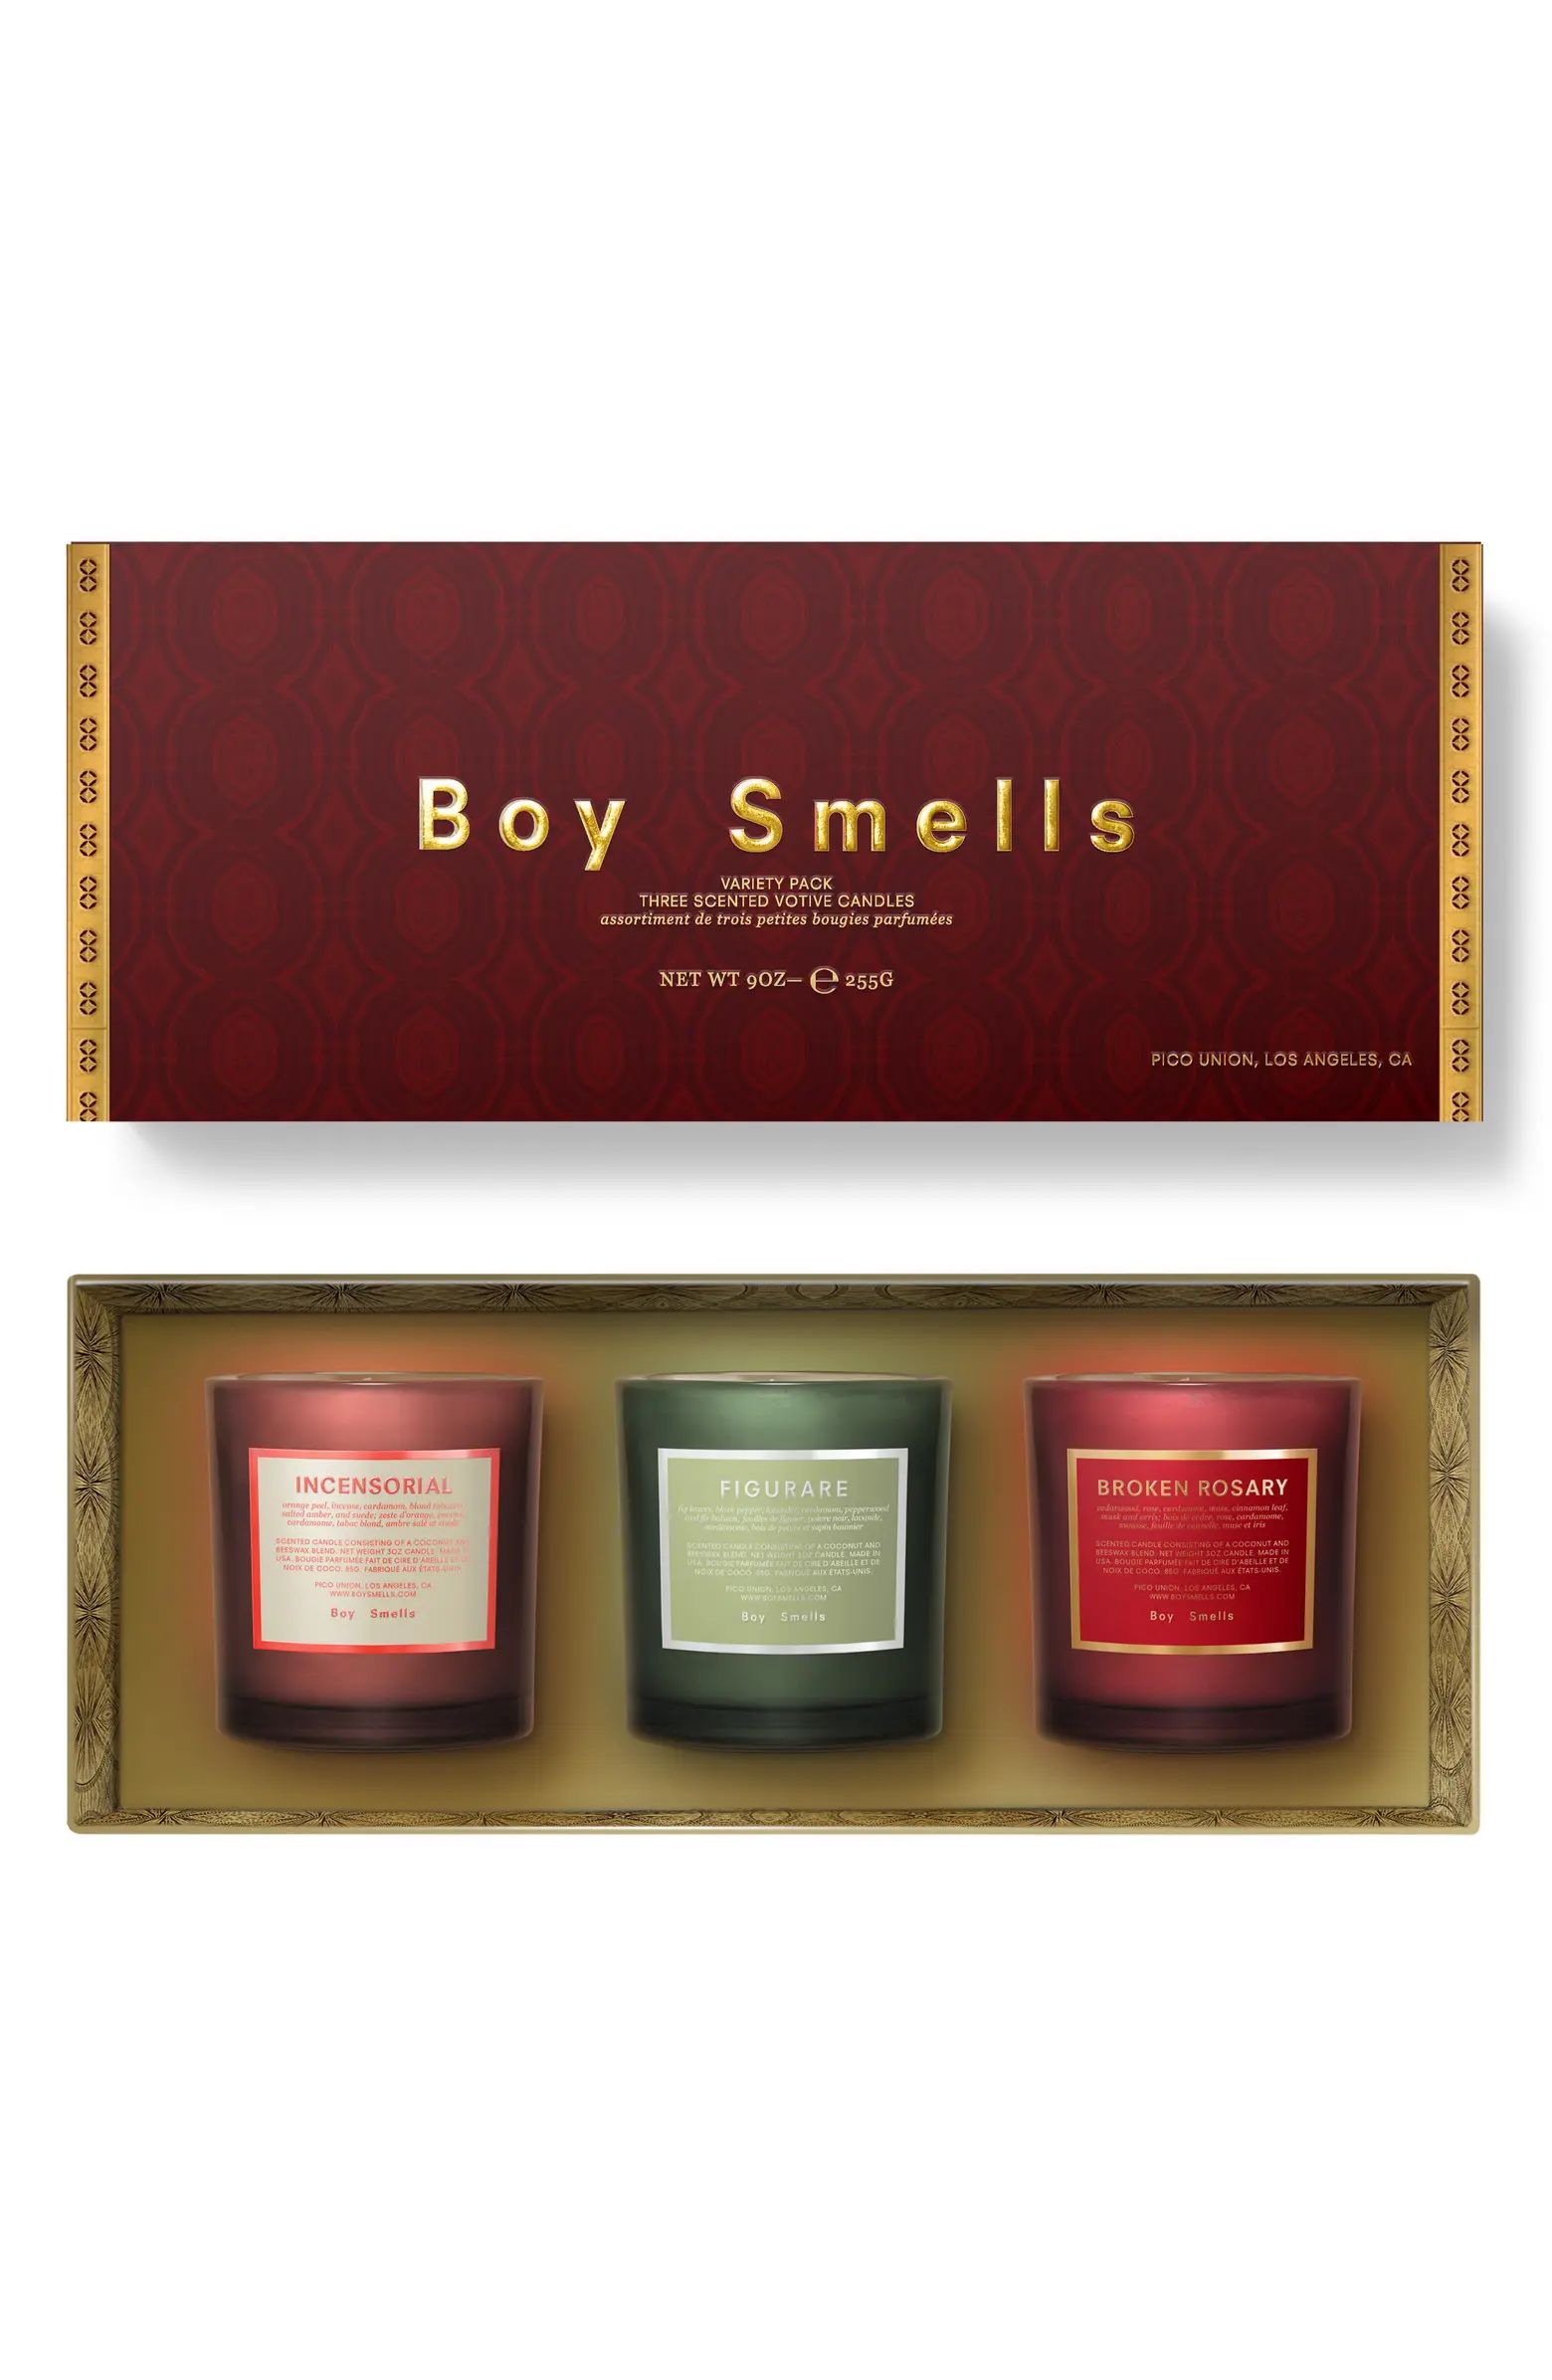 Boy Smells Holiday Votive Trio Candle Set USD $66 Value | Nordstromrack | Nordstrom Rack